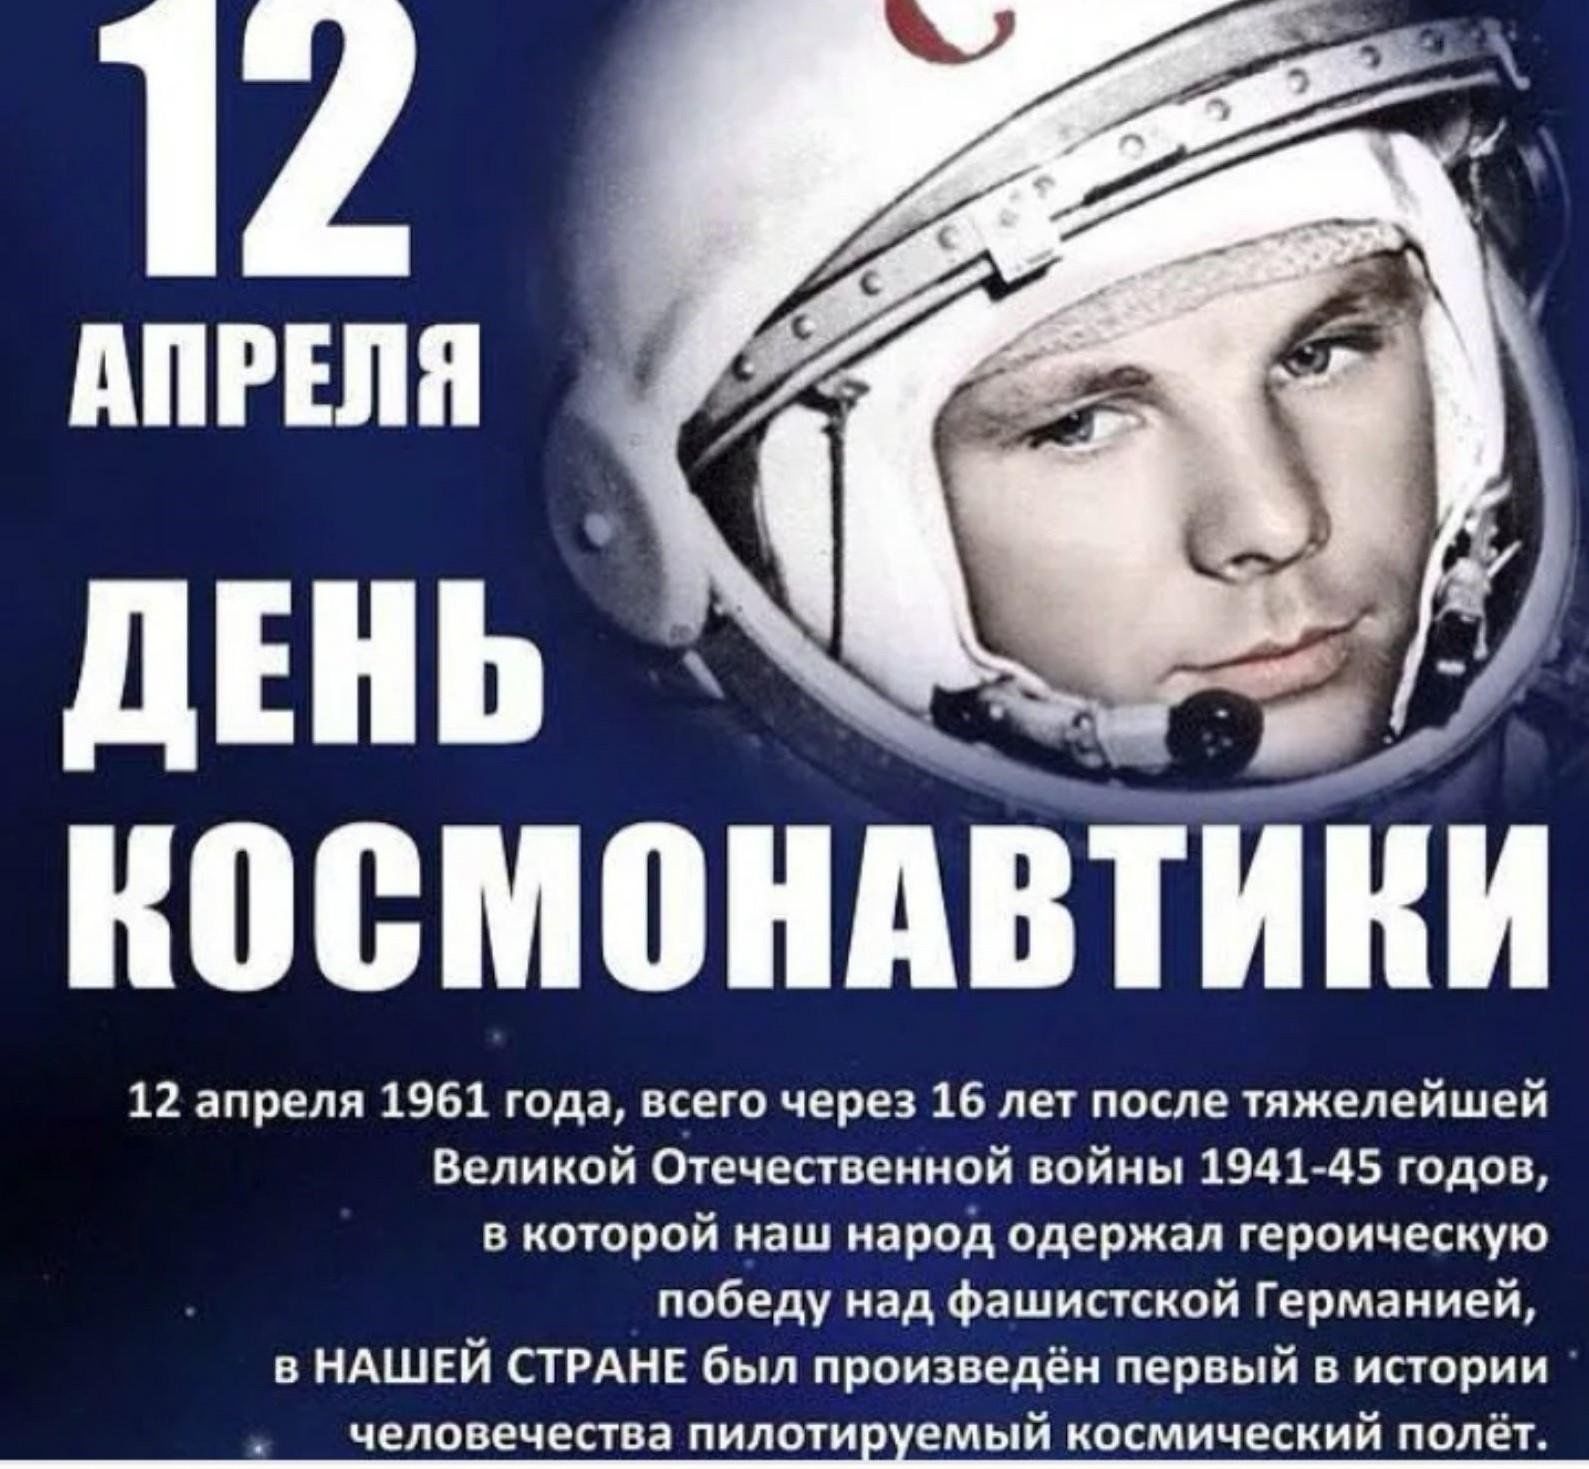 Когда в россии отмечают день космонавтики. 12 Апреля день космонавтики. День Космонавта. СССРТС днем космонавтики. 12 - Апрель день косонавтики.